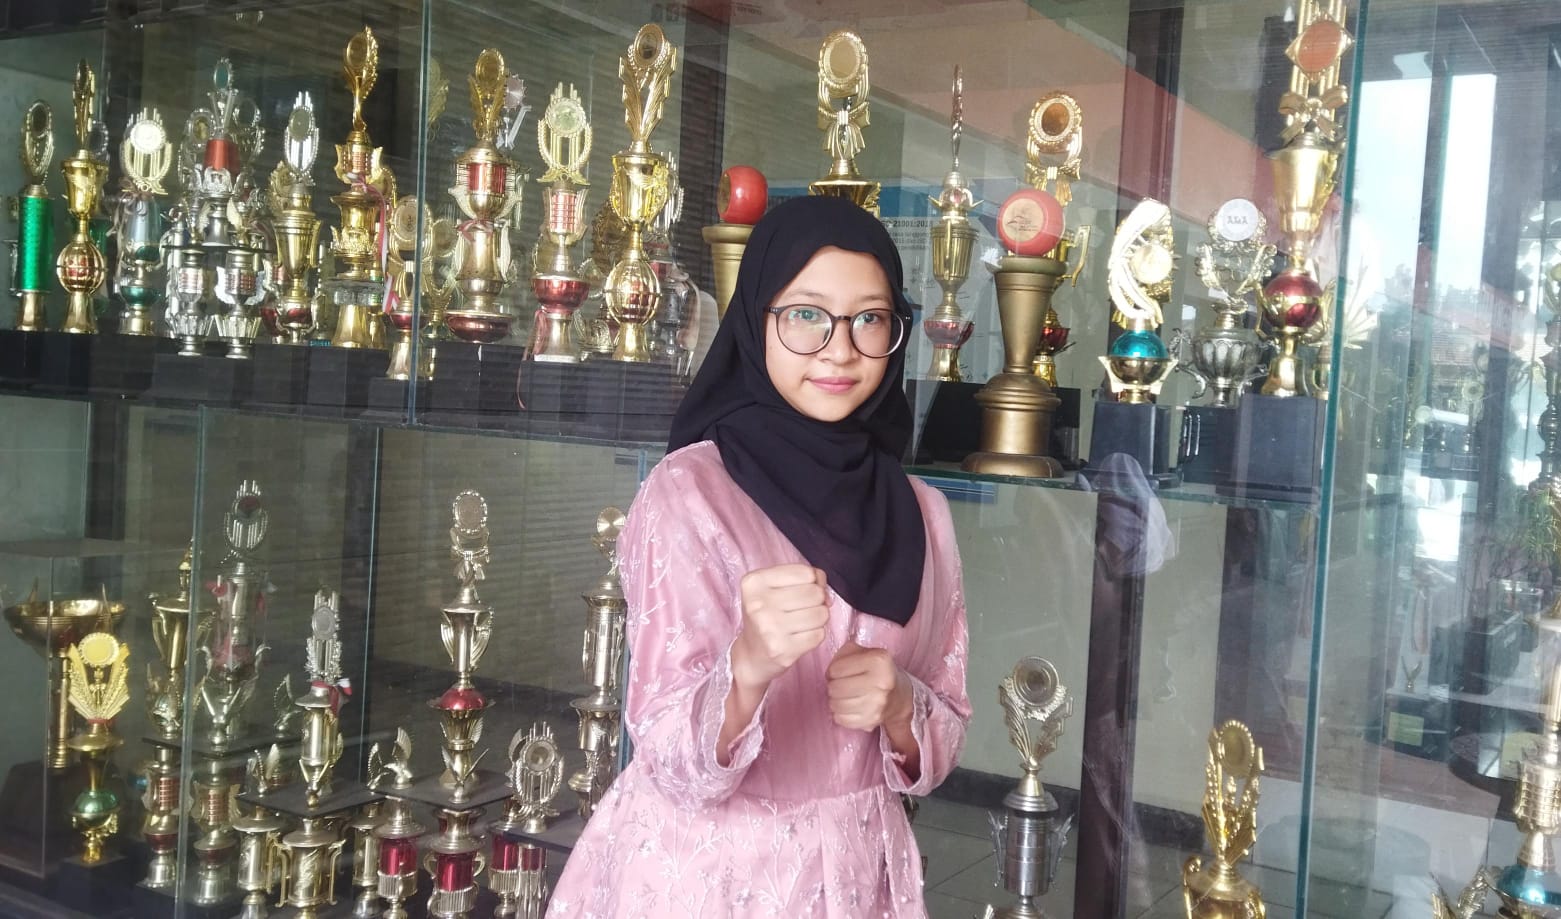 Siswi SMKN 3 Kota Bandung, Andini Sofya. Dirinya berhasil meraih juara 1 O2SN SMK se-Kota Bandung, cabang olahraga karate